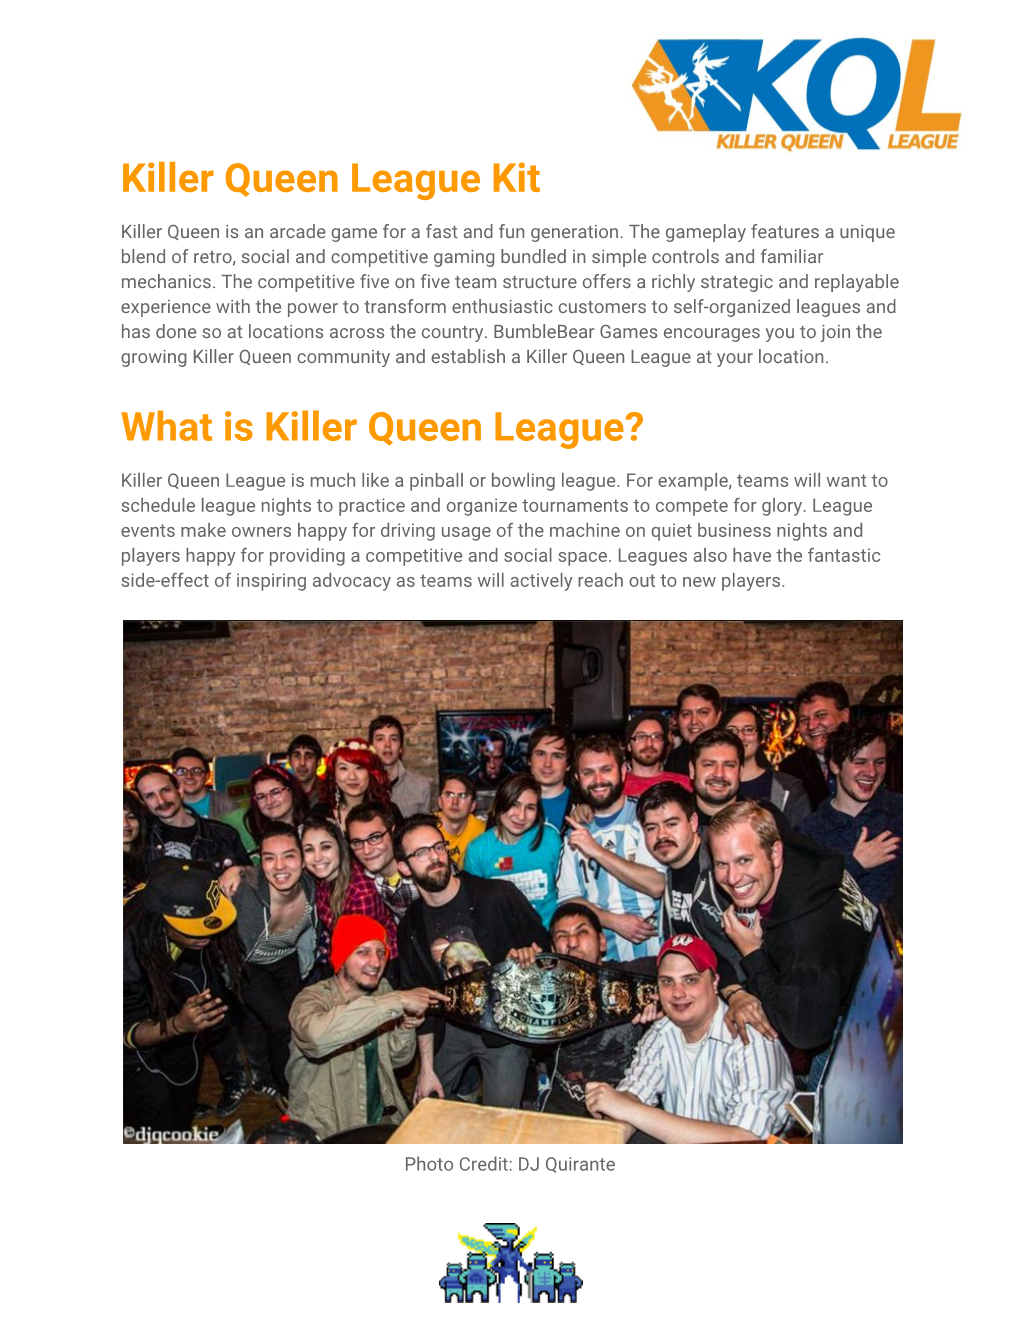 What Is Killer Queen League?